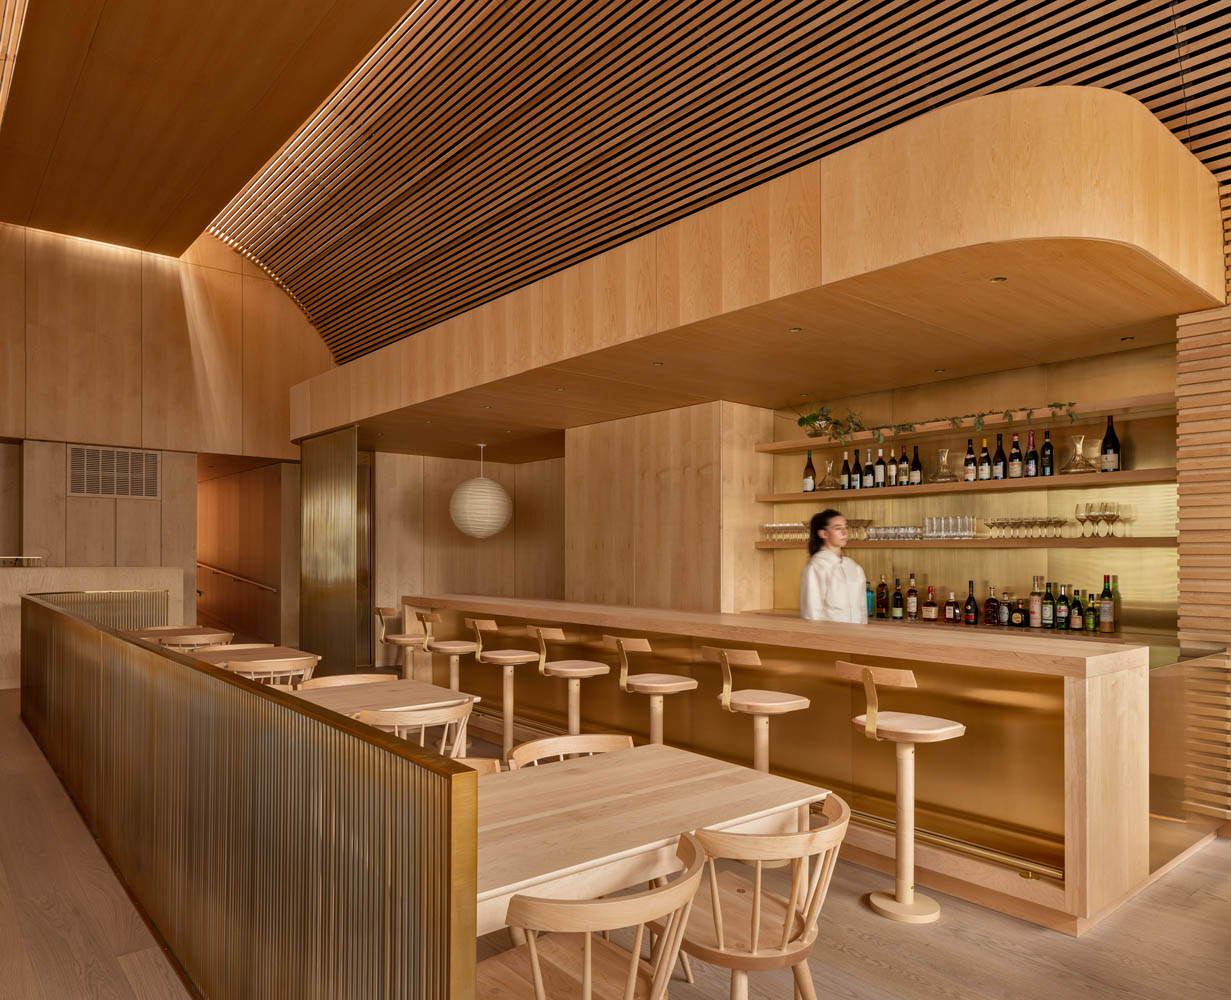 Omar Gandhi Architect,餐廳設計案例,家具展廳設計,海鮮酒吧&餐廳,加拿大,餐廳設計,酒吧設計,海鮮餐廳設計,酒吧設計案例,日式風格餐廳設計